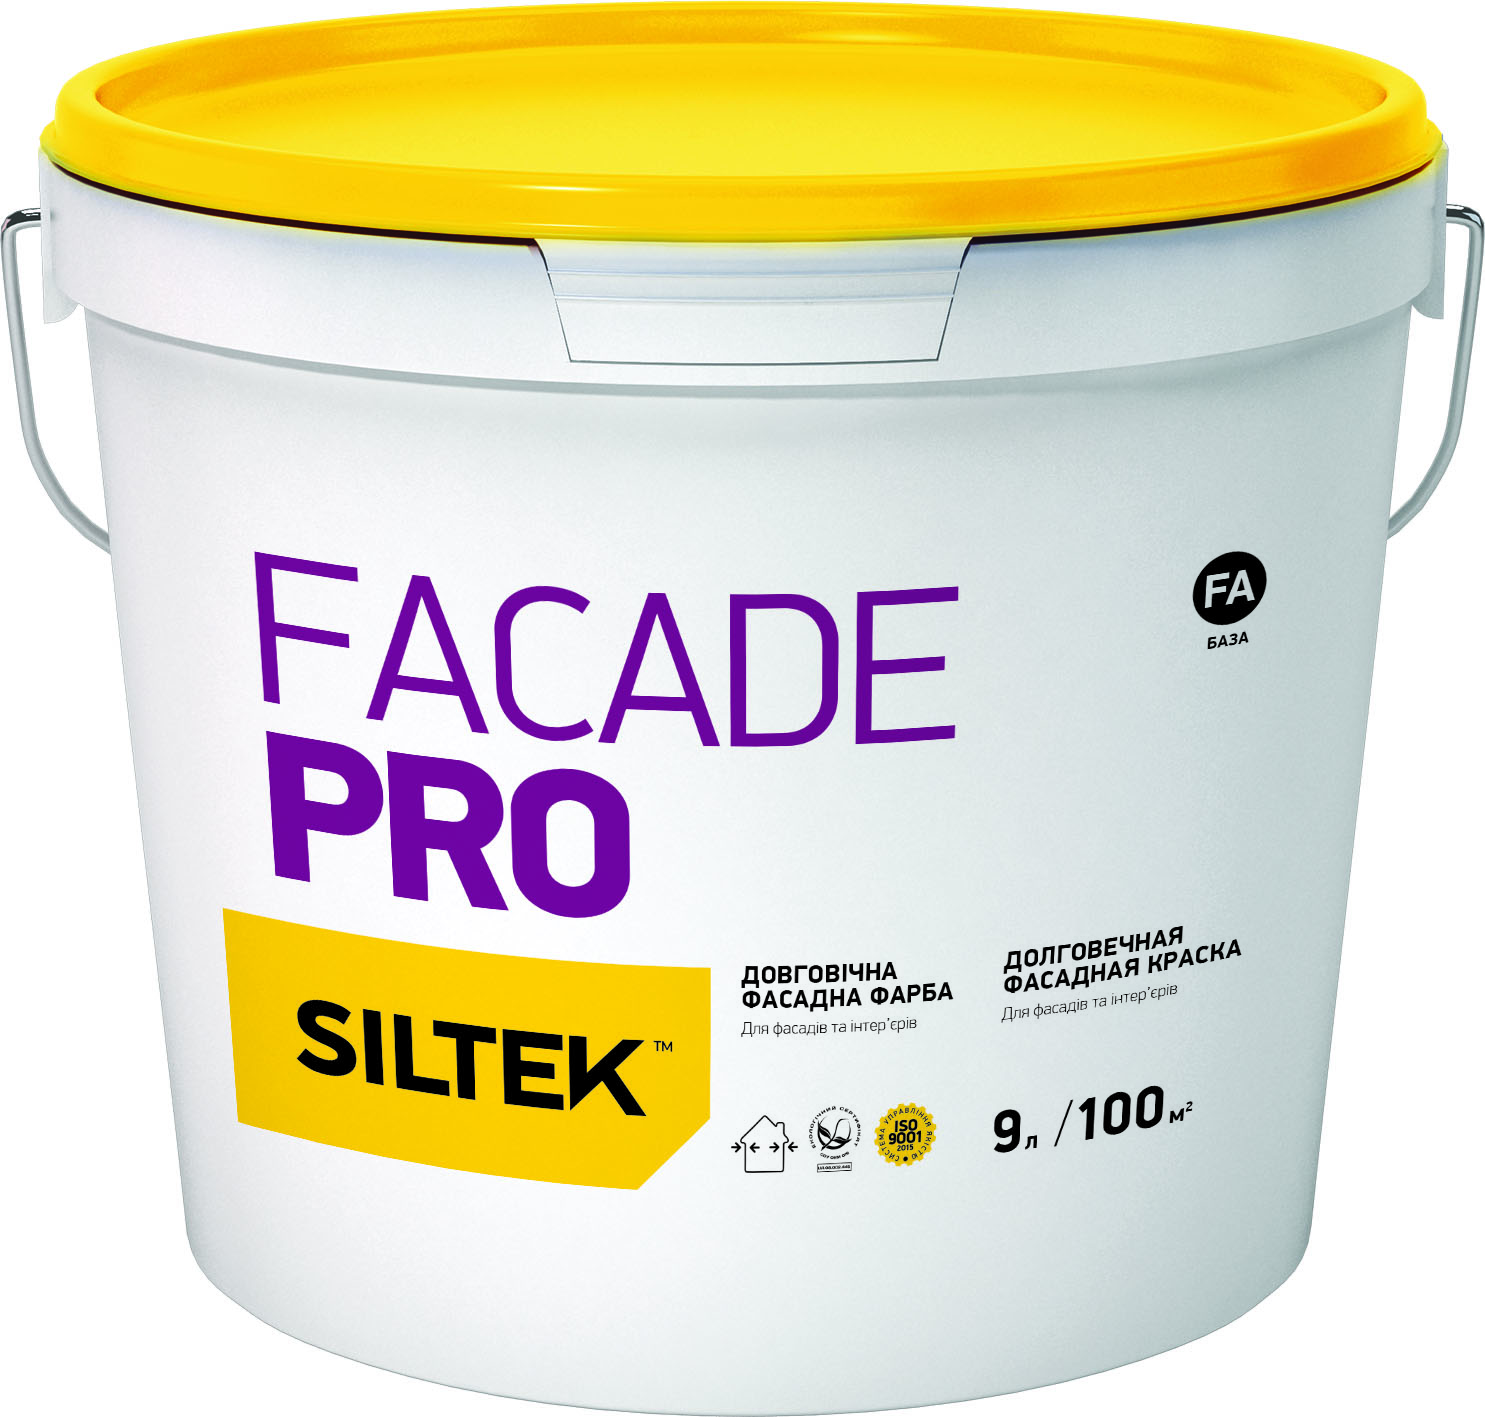 SILTEK Facade Pro